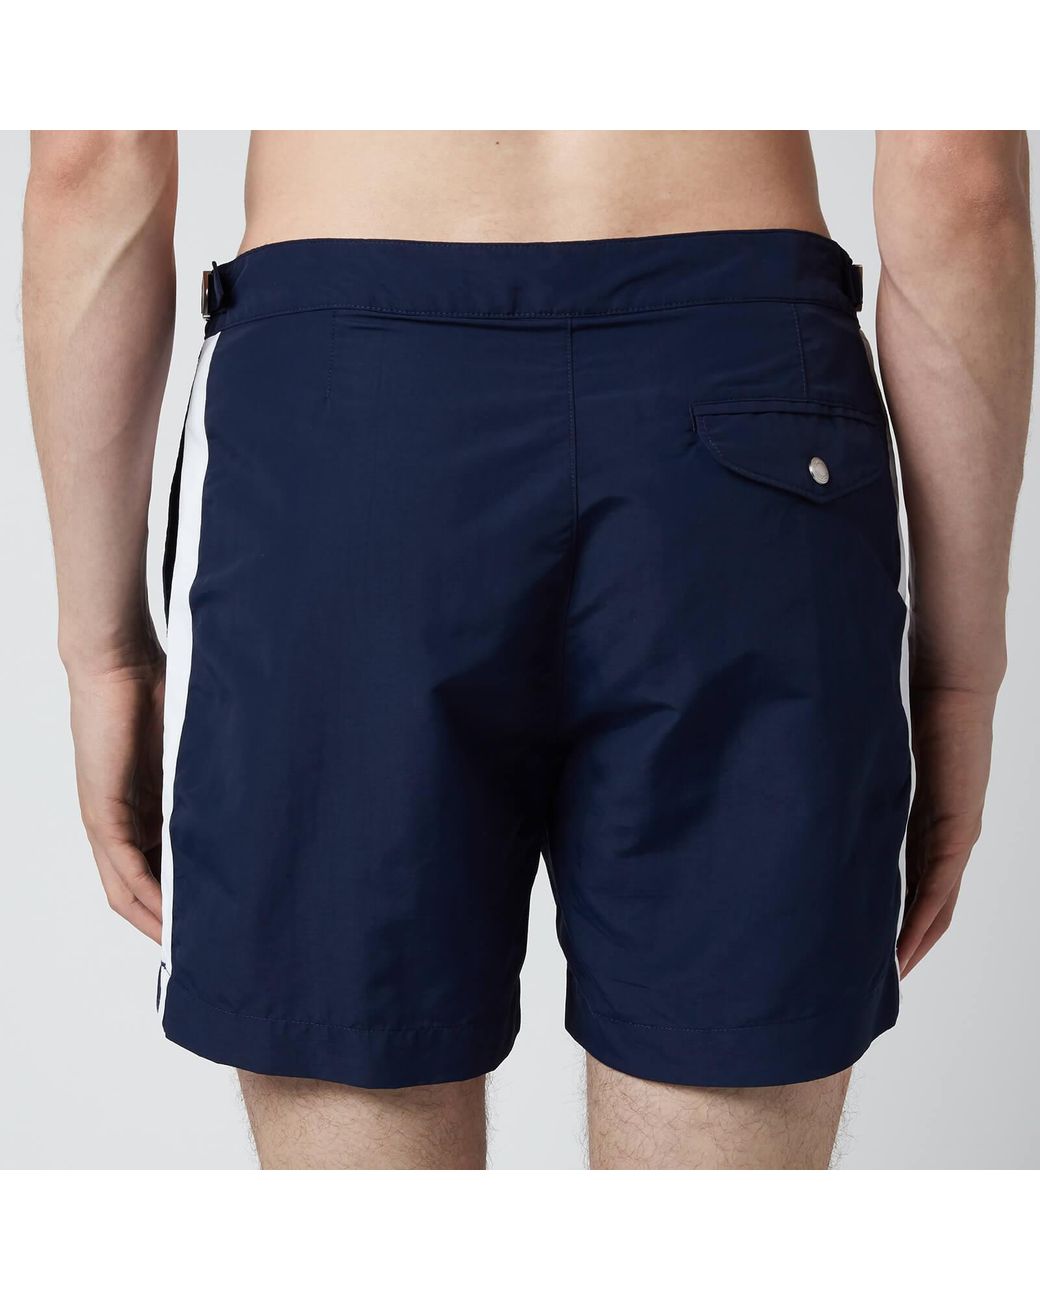 Polo Ralph Lauren Synthetic Monaco Swim Shorts in Blue for Men - Lyst